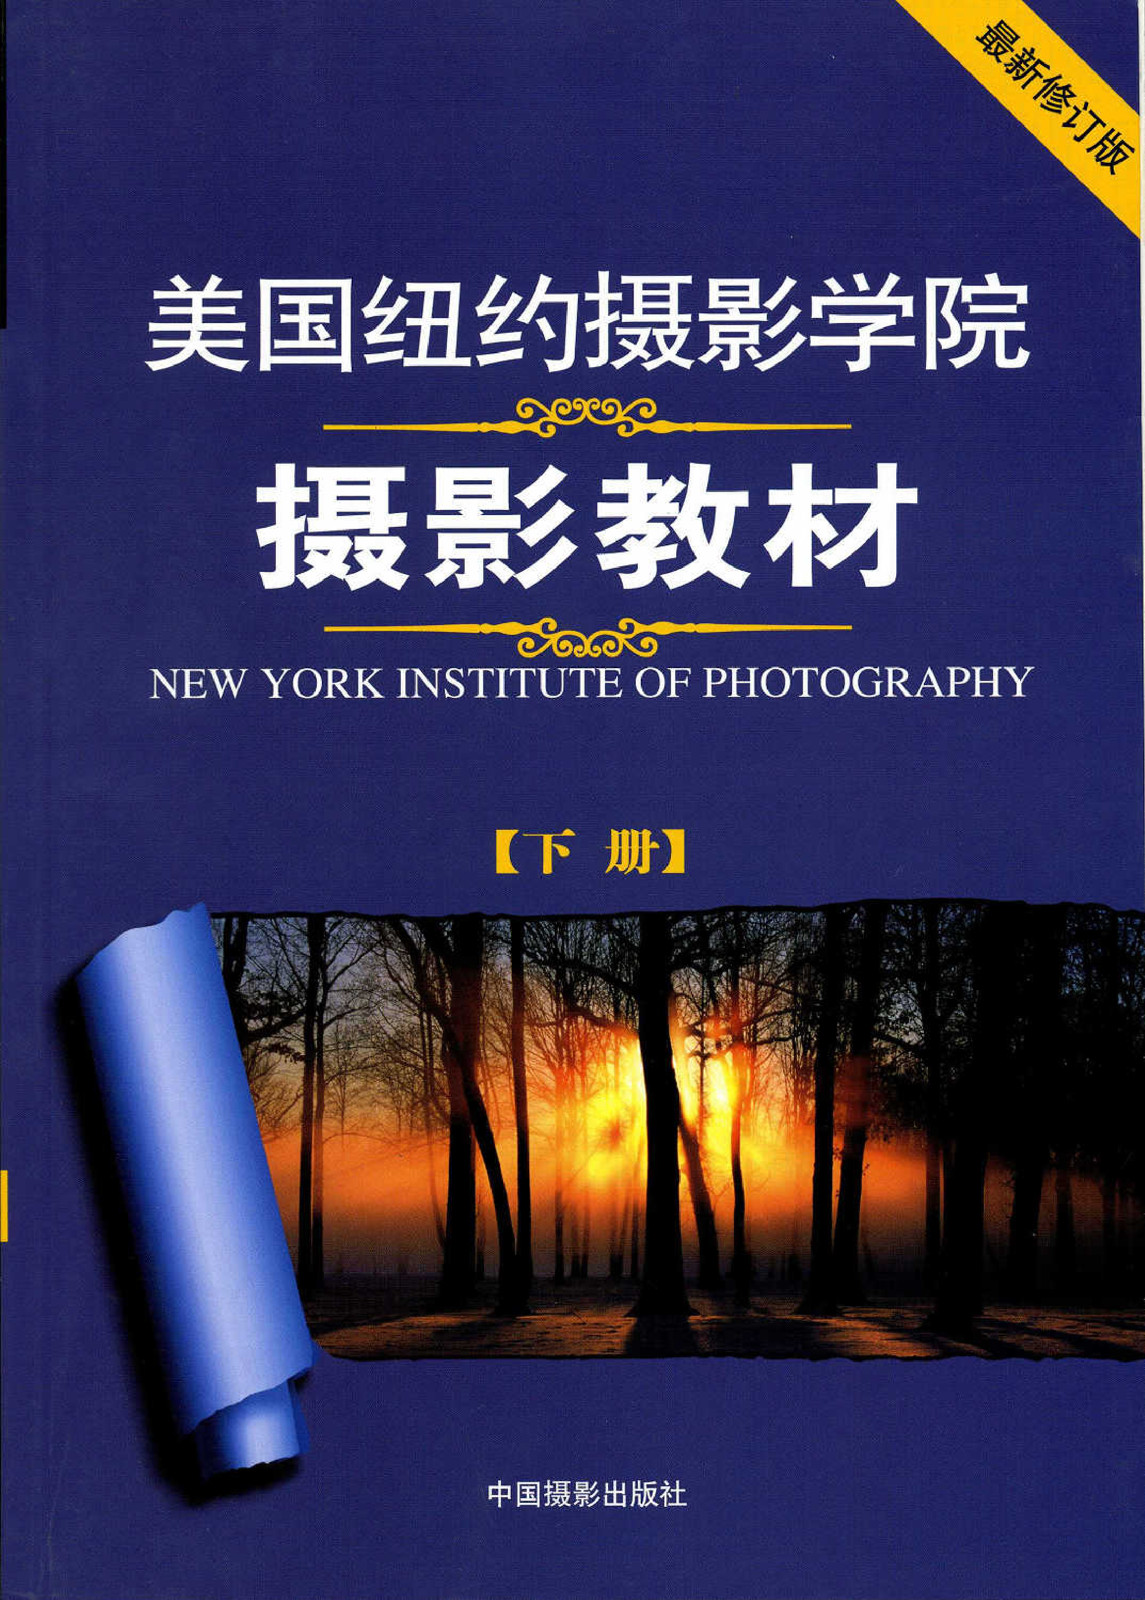 纽约摄影学院摄影教材 09年修订版 下册